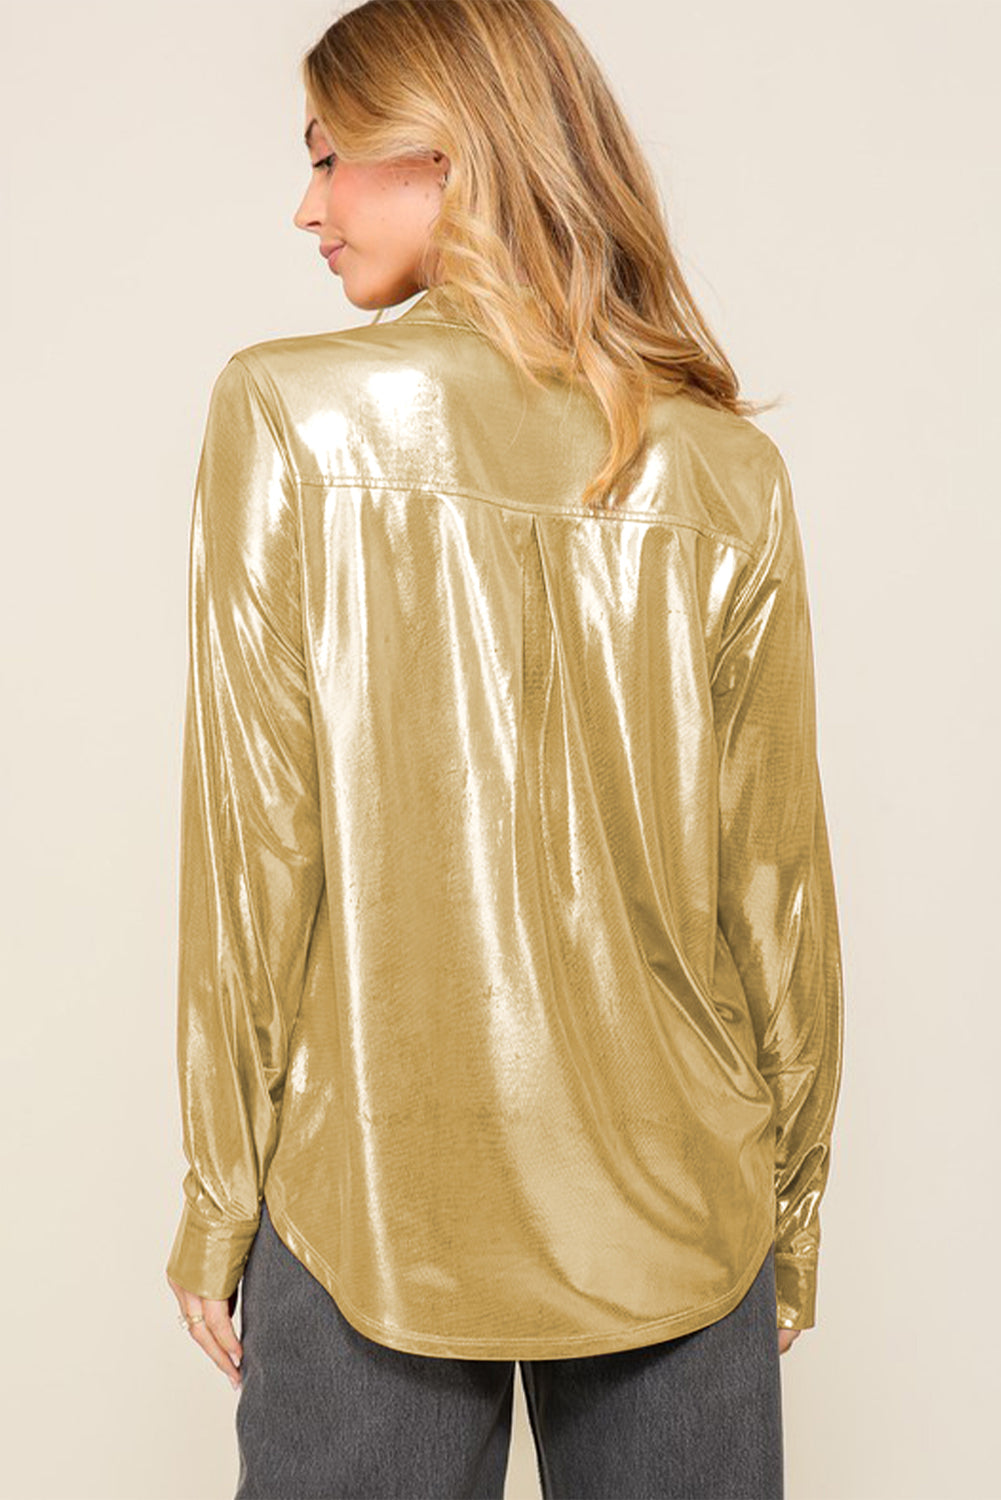 Camicia con taschino sul petto in oro metallizzato lucido